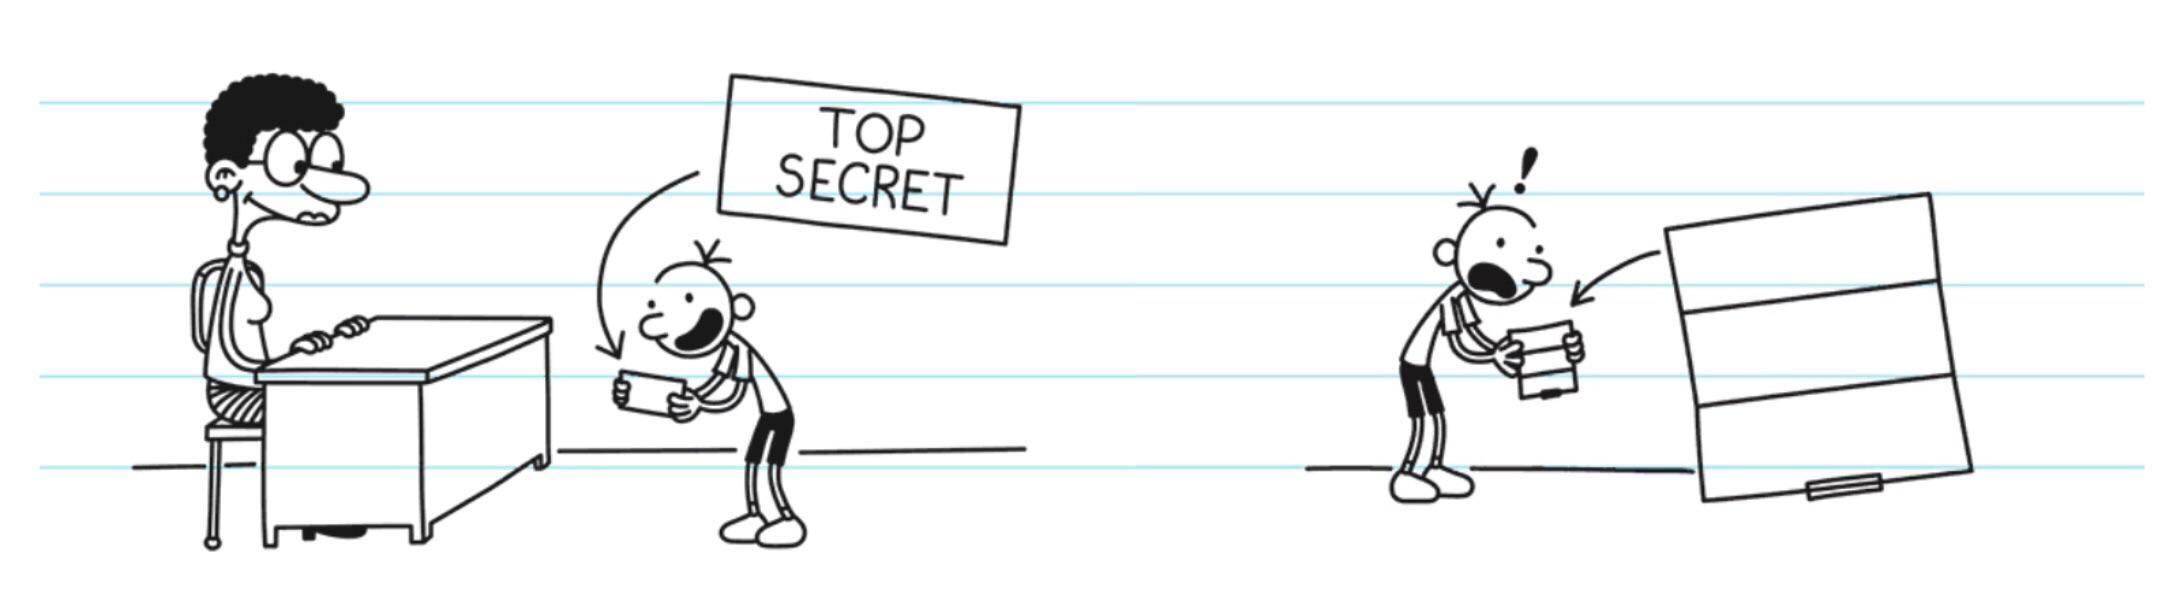 Greg's top secret note Blank Meme Template